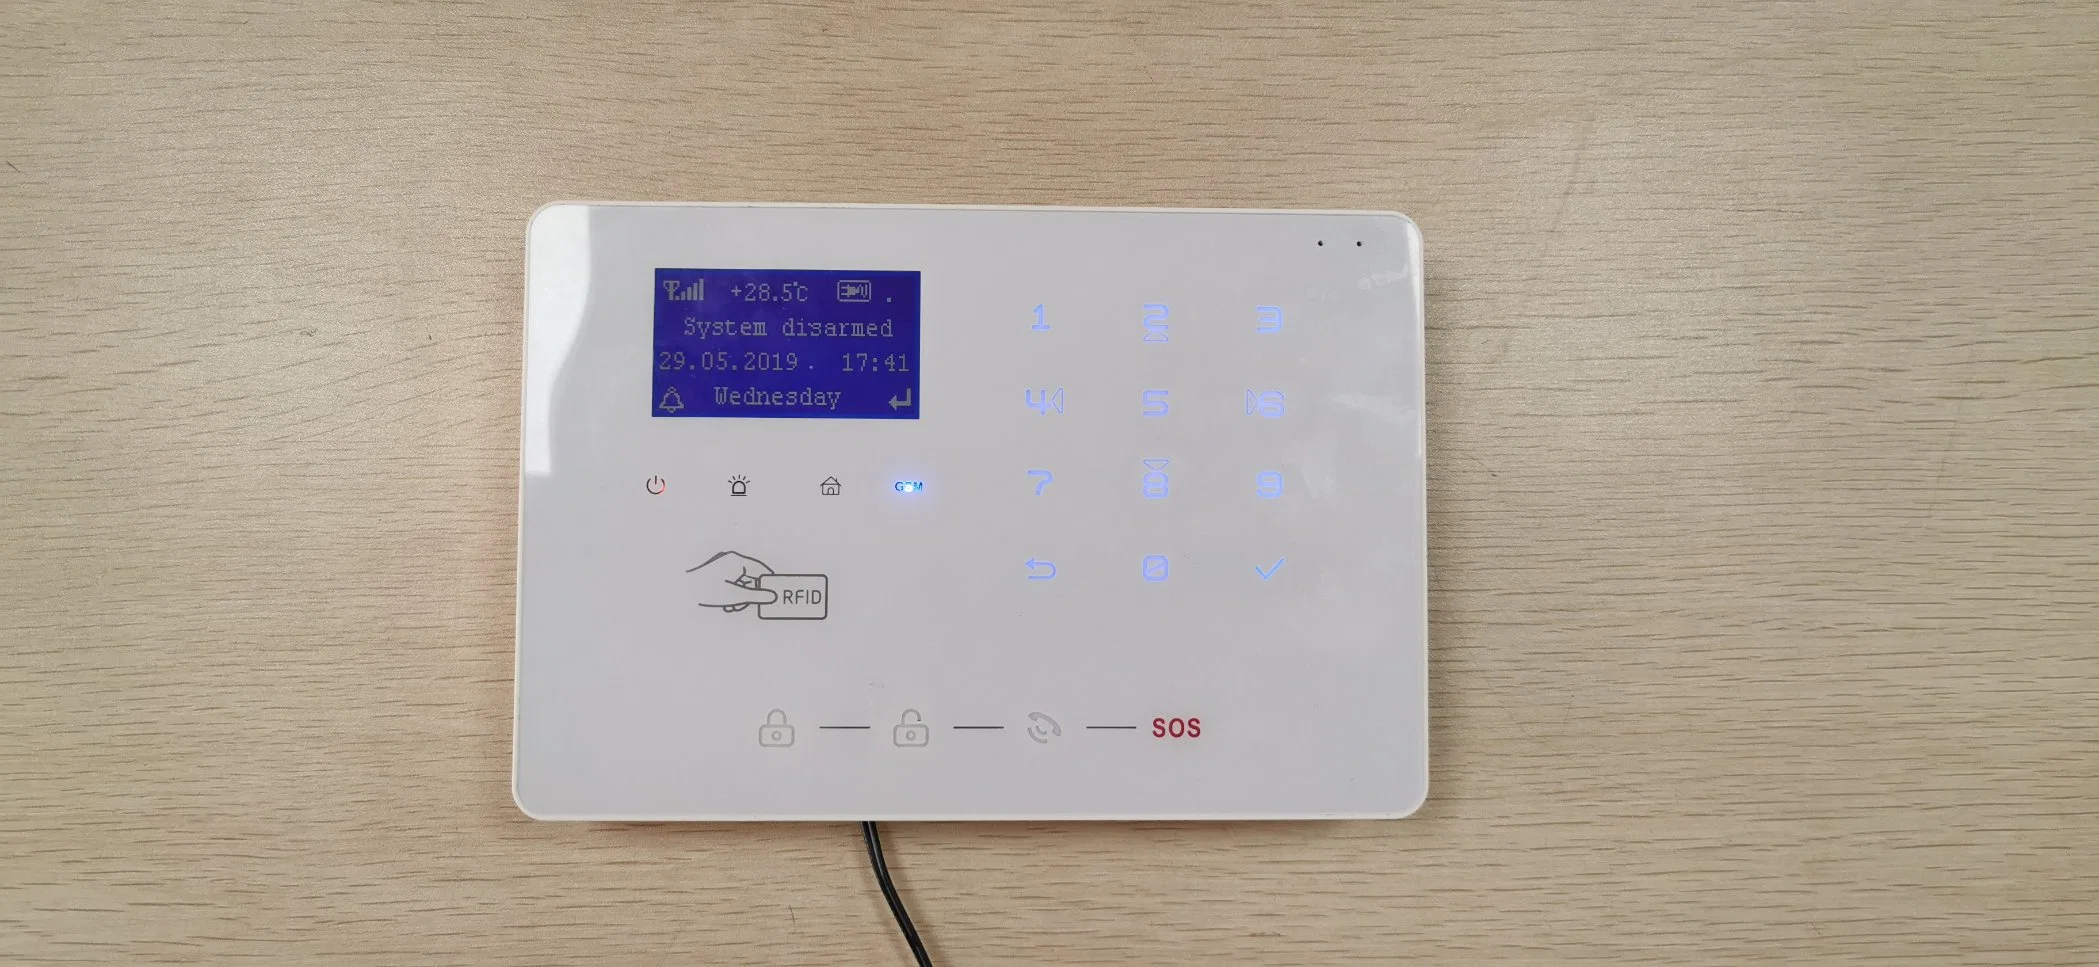 Mais de 6 idiomas para comutar o alarme antirroubo do painel Detector PIR sistema de alarme WiFi de 433 MHz para alarme de segurança doméstica Sem fios